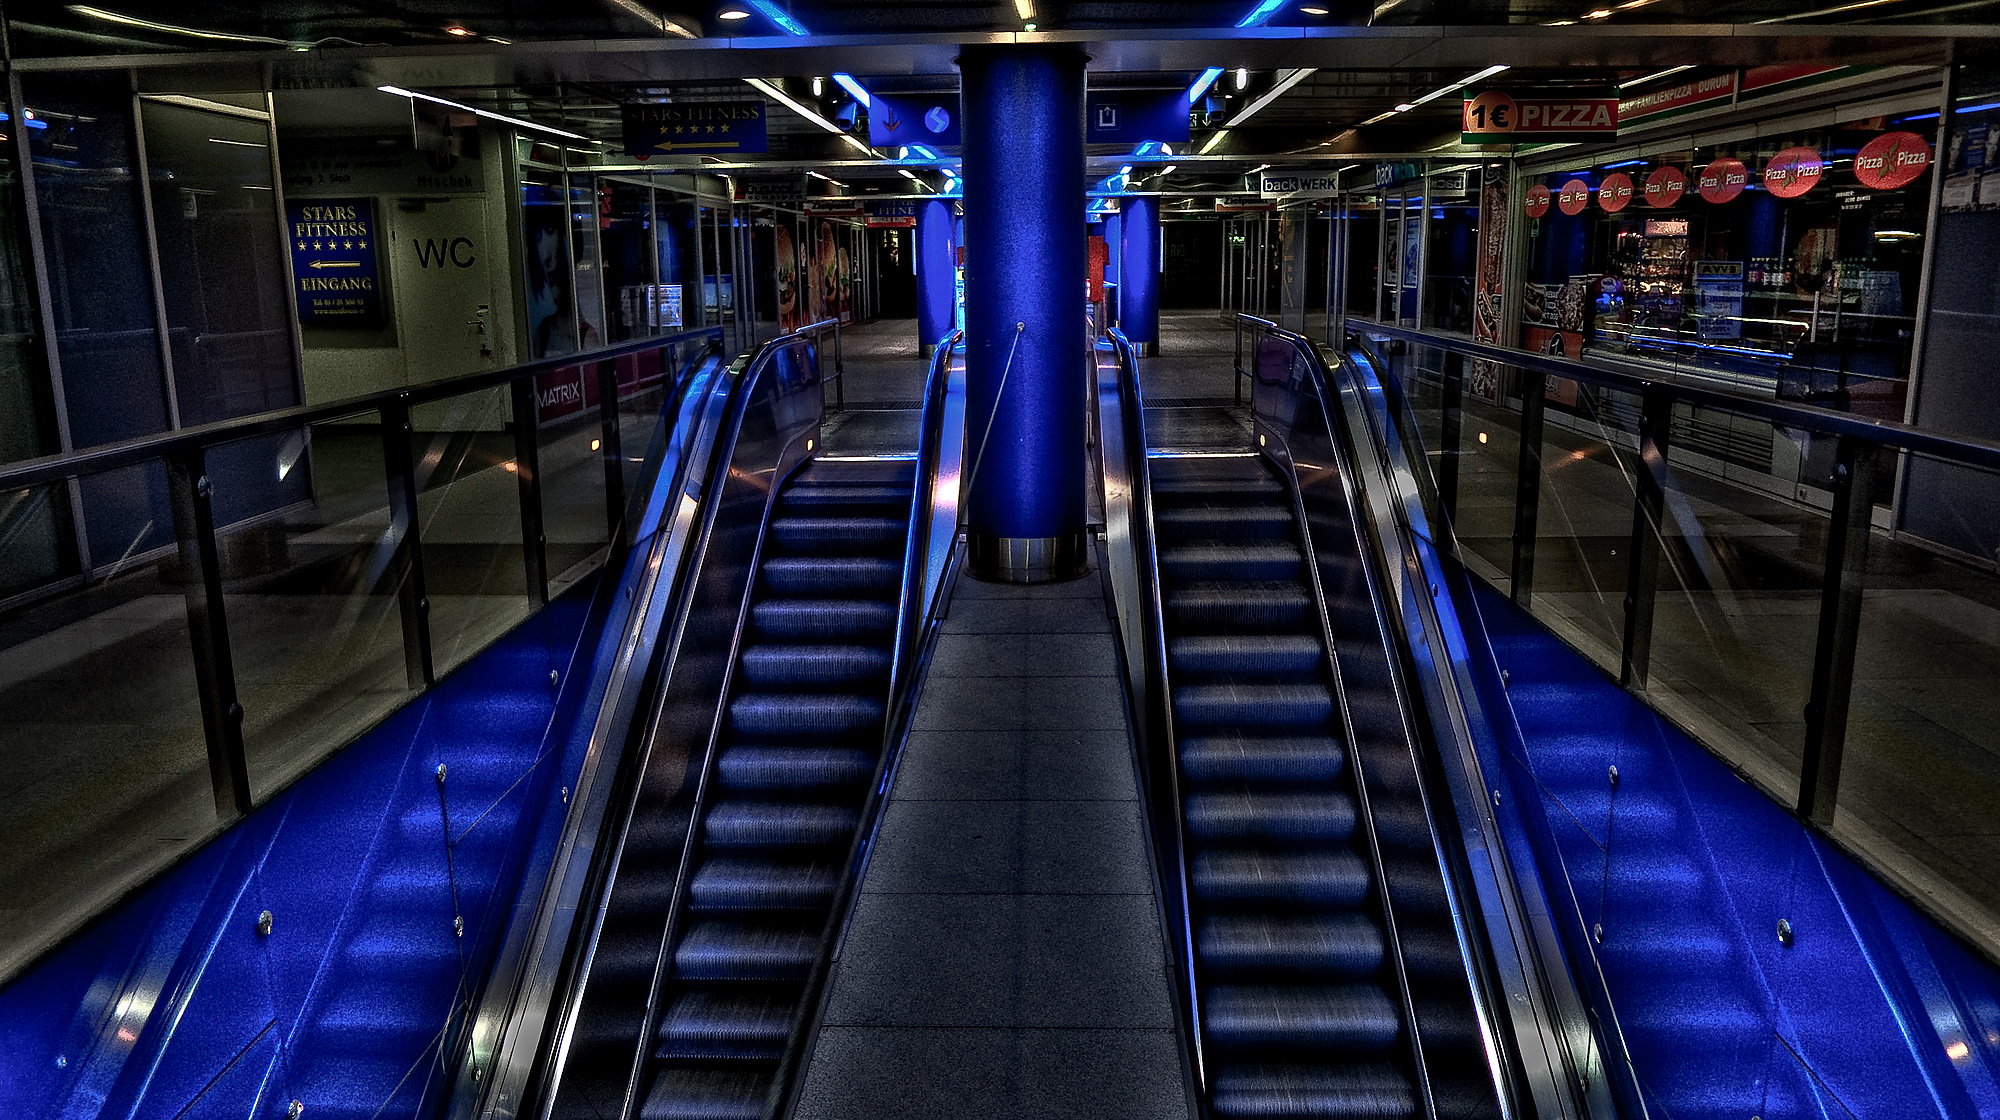 stairways, escalators - desktop wallpaper